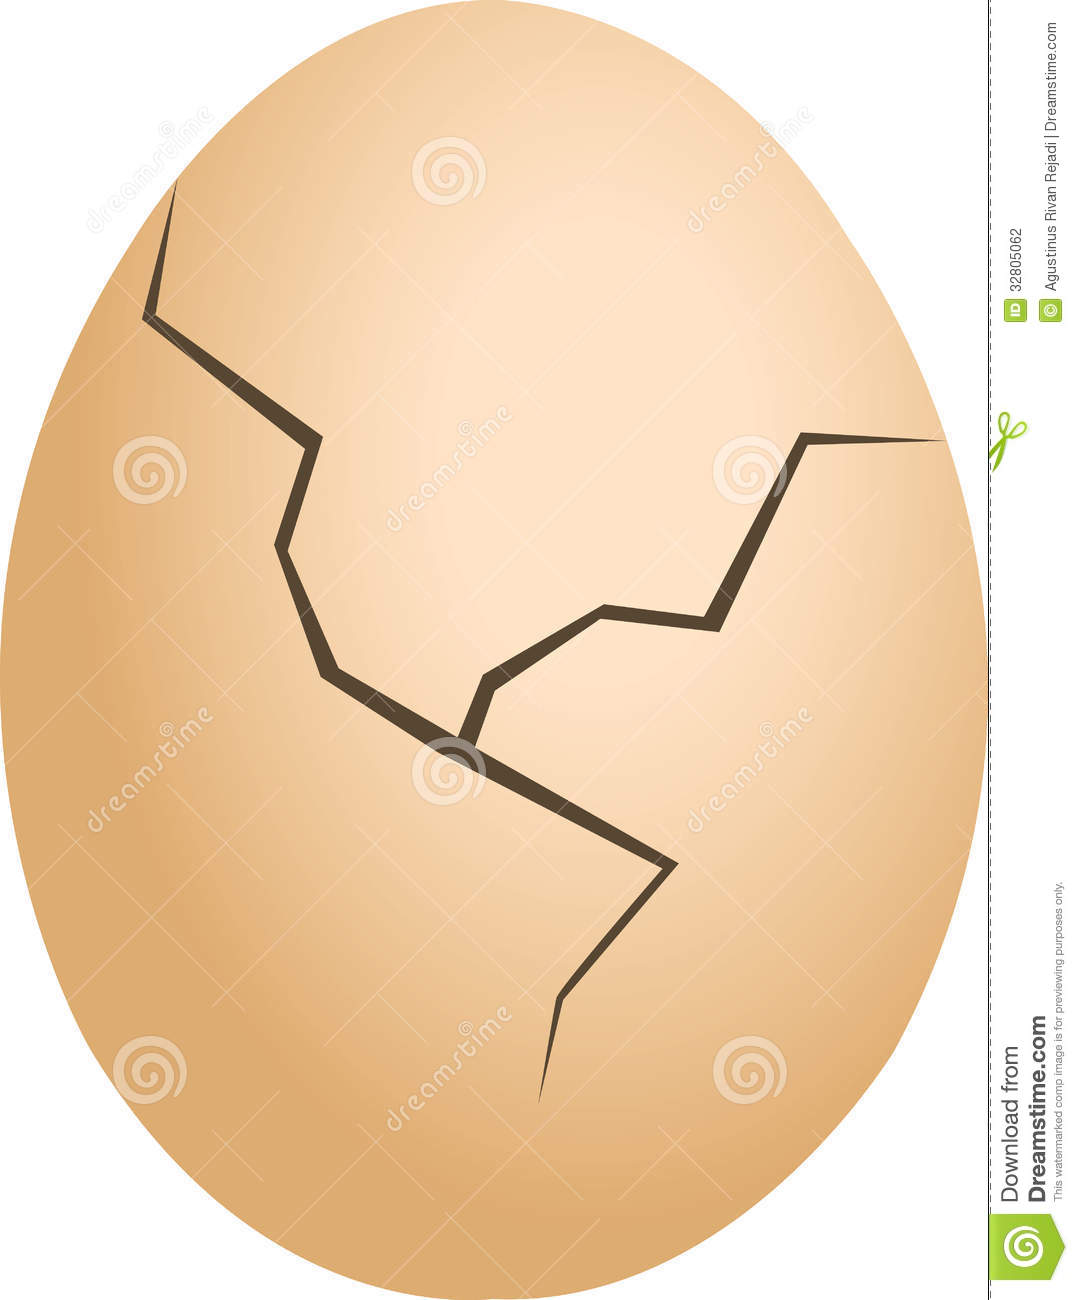 Egg Cracked